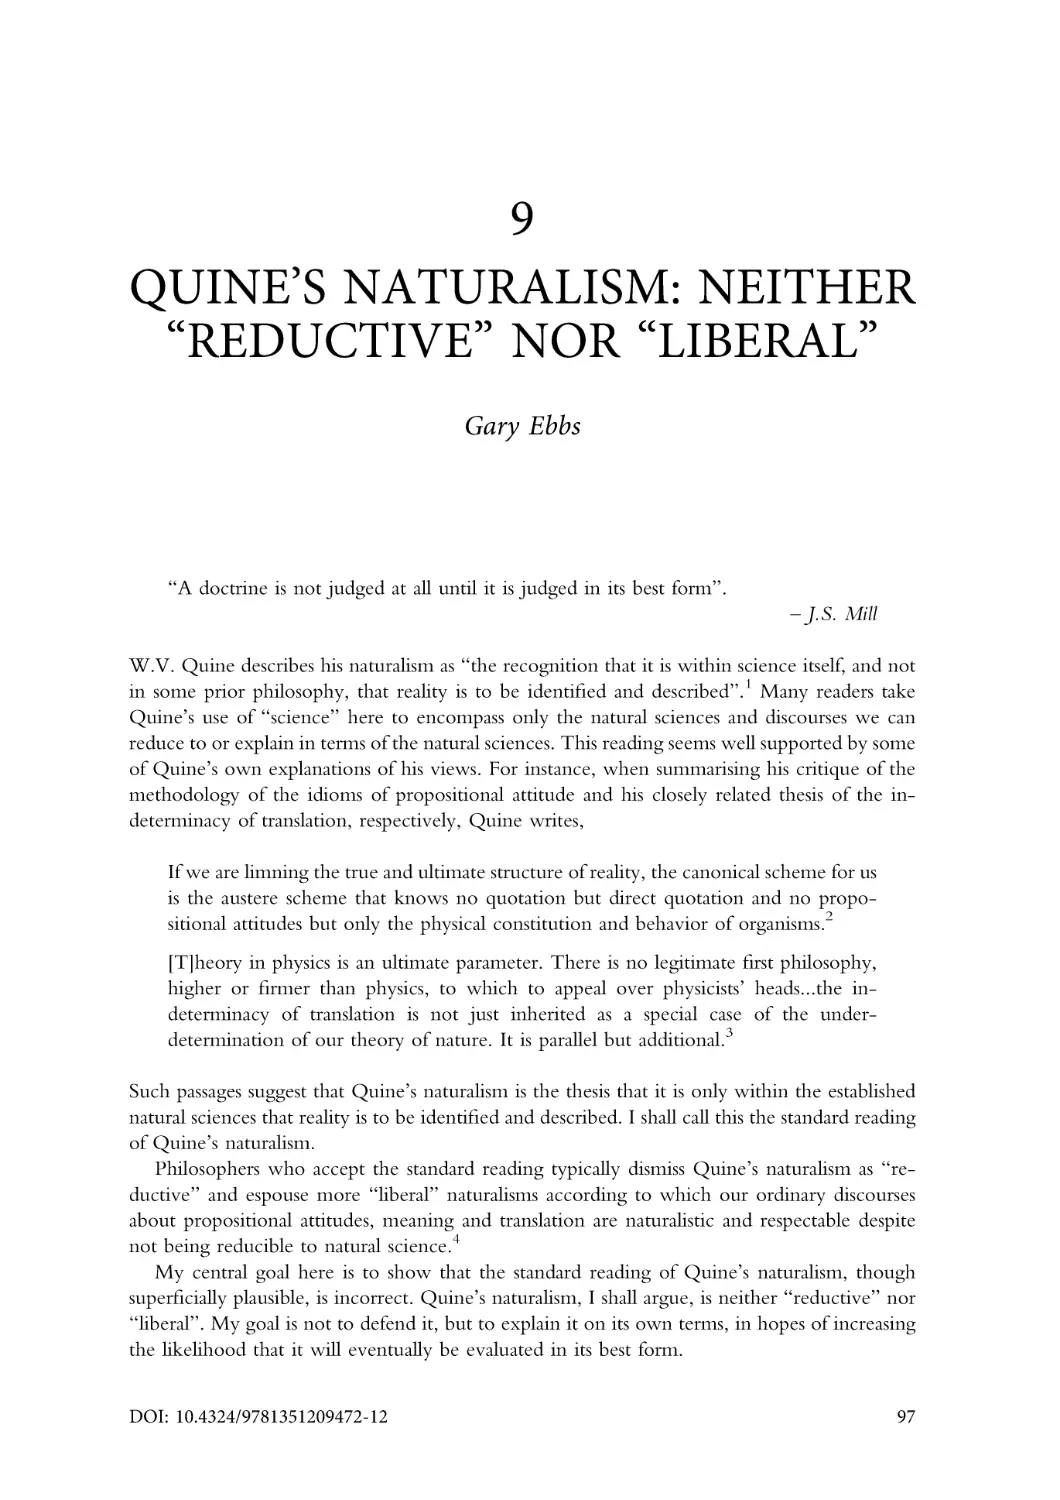 9. Quine's naturalism